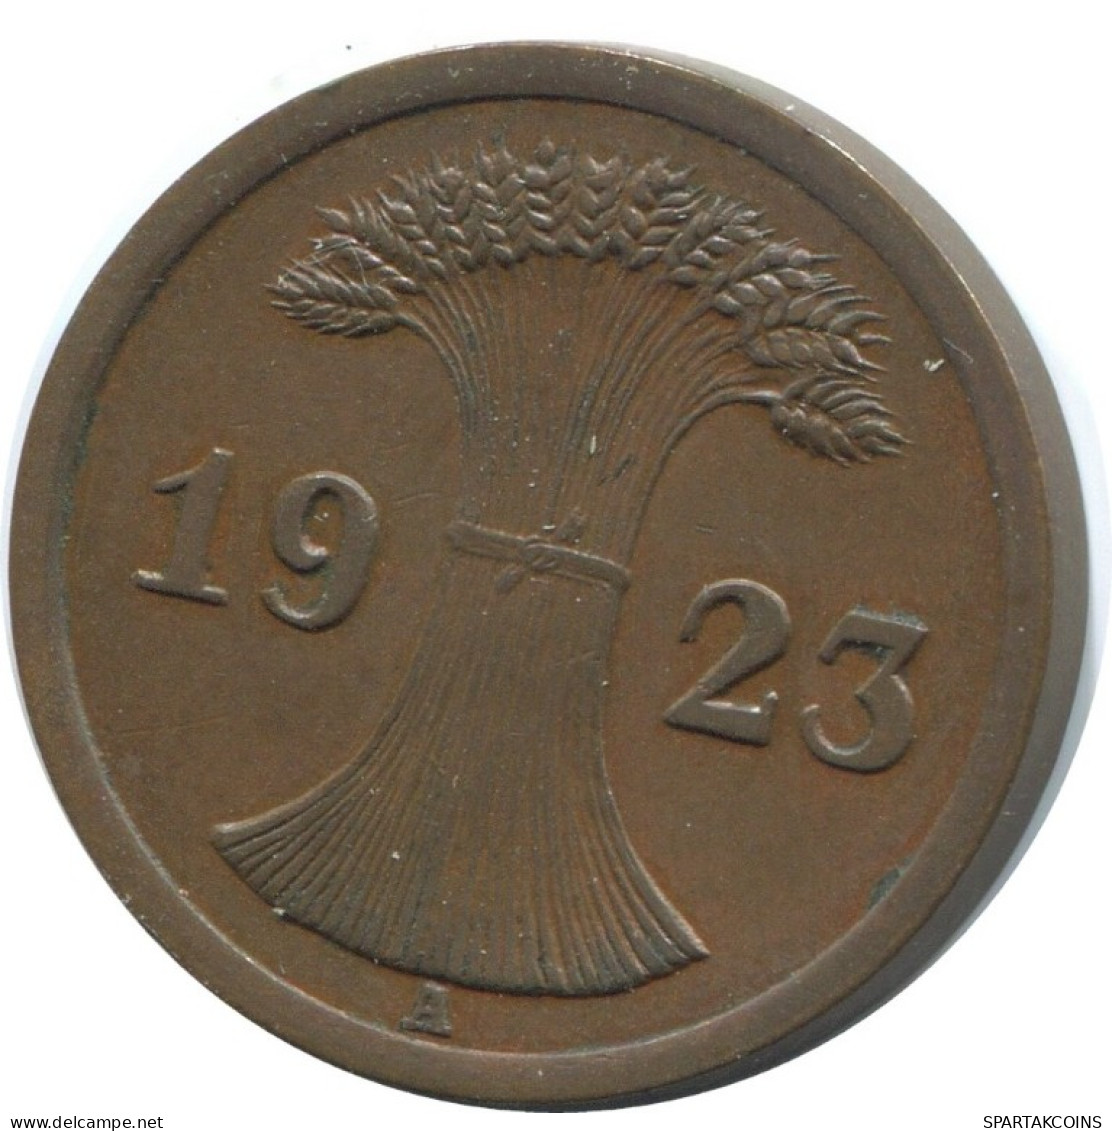 2 RENTENPFENNIG 1923 A ALEMANIA Moneda GERMANY #AE271.E.A - 2 Rentenpfennig & 2 Reichspfennig